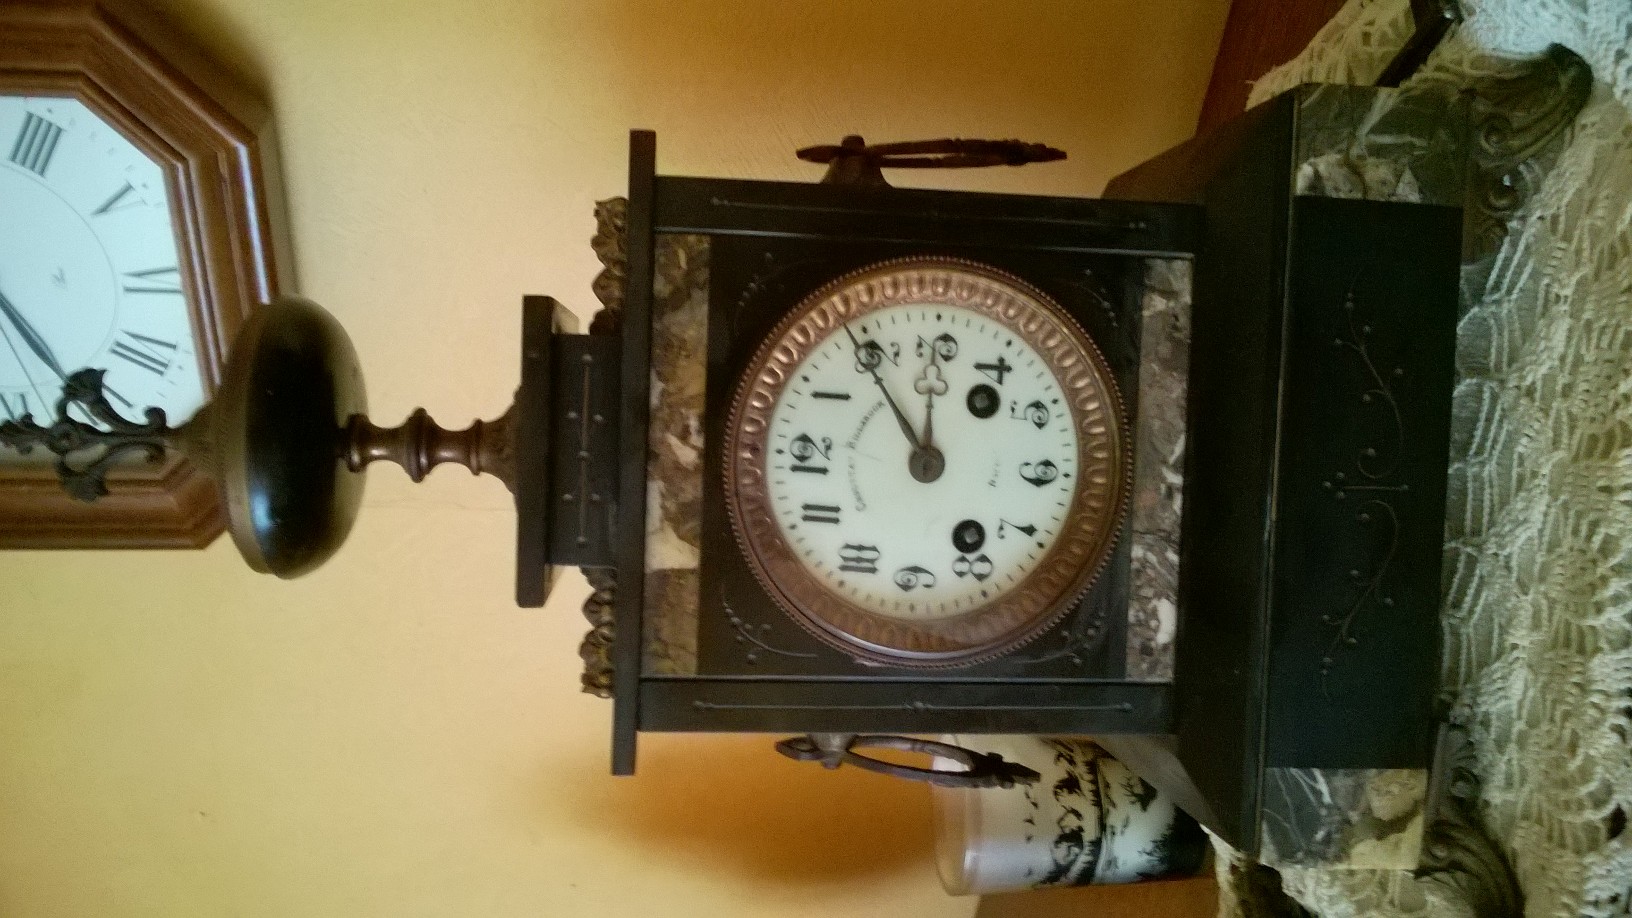 1.05 – Identifier une horloge ancienne Identifier une horloge ancienne Il  est important de bien identifier l'horloge que vous venez d'acheter. Dans  ce qui suit, vous apprendrez à suivre un processus qui